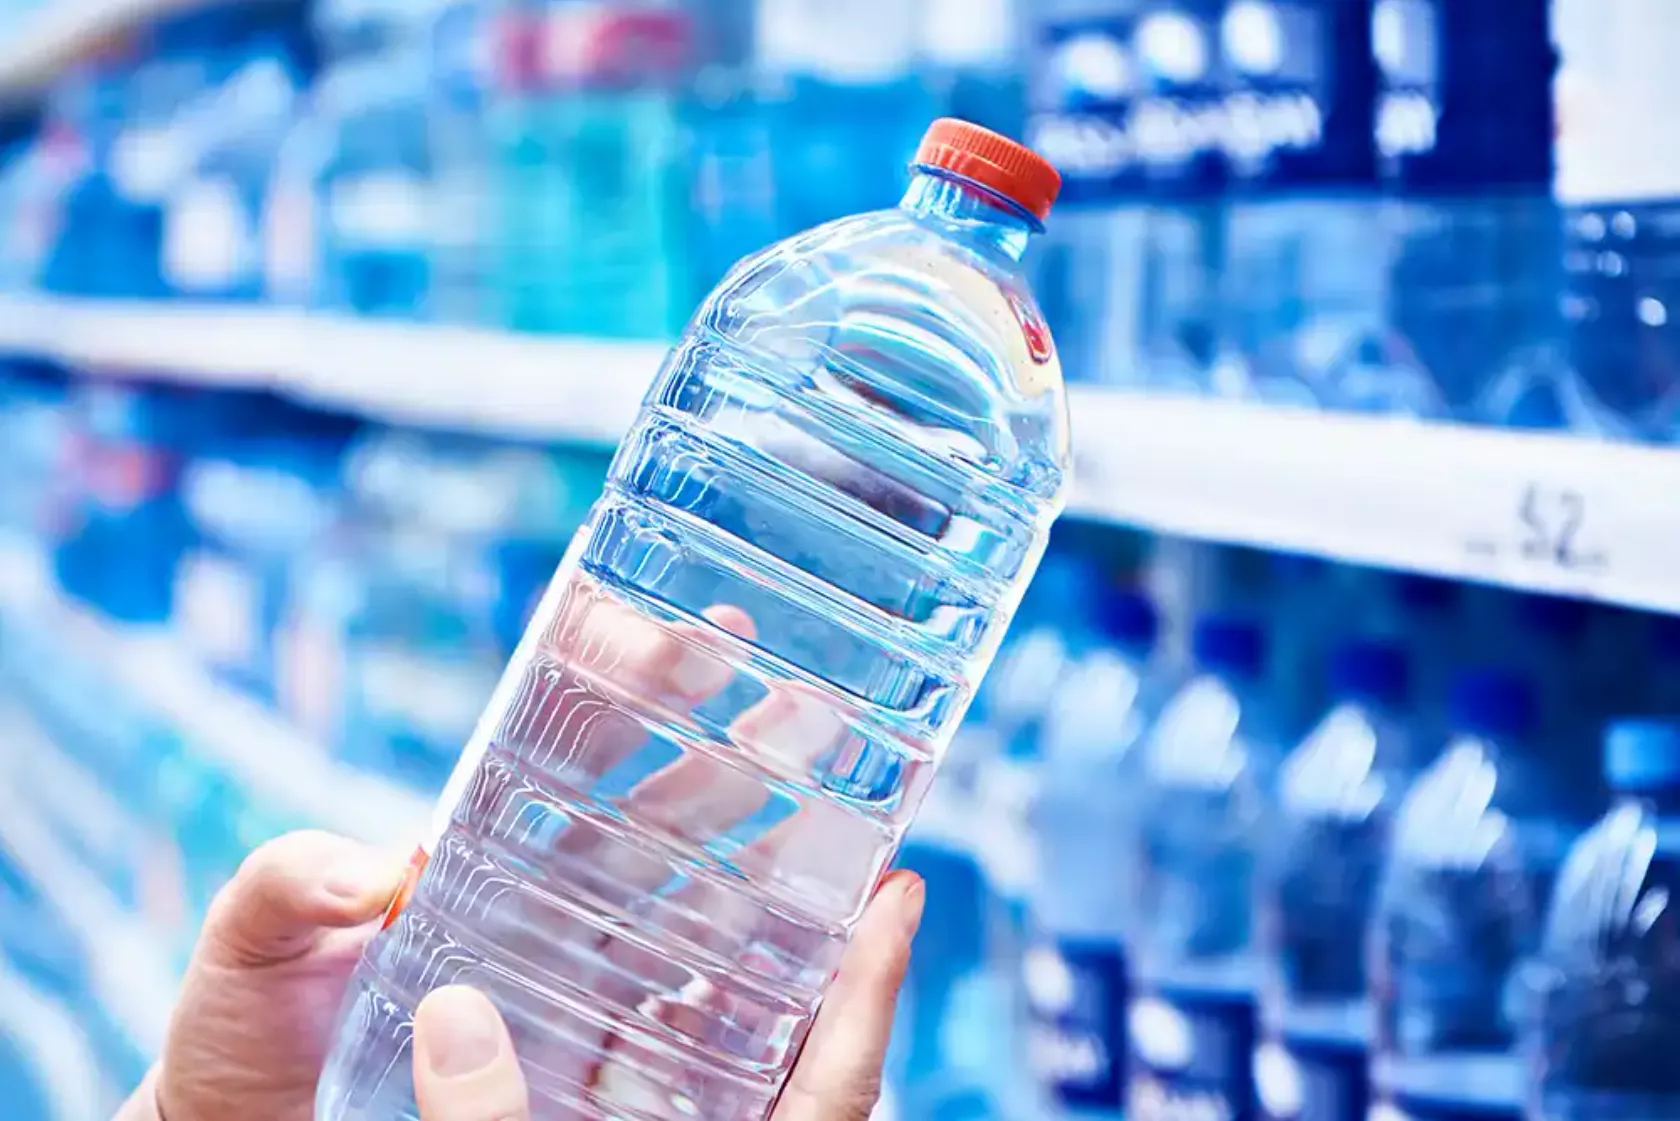 Regal voller Plastik-Wasserflaschen im Supermarkt und eine Frau hält eine Flasche hoch.